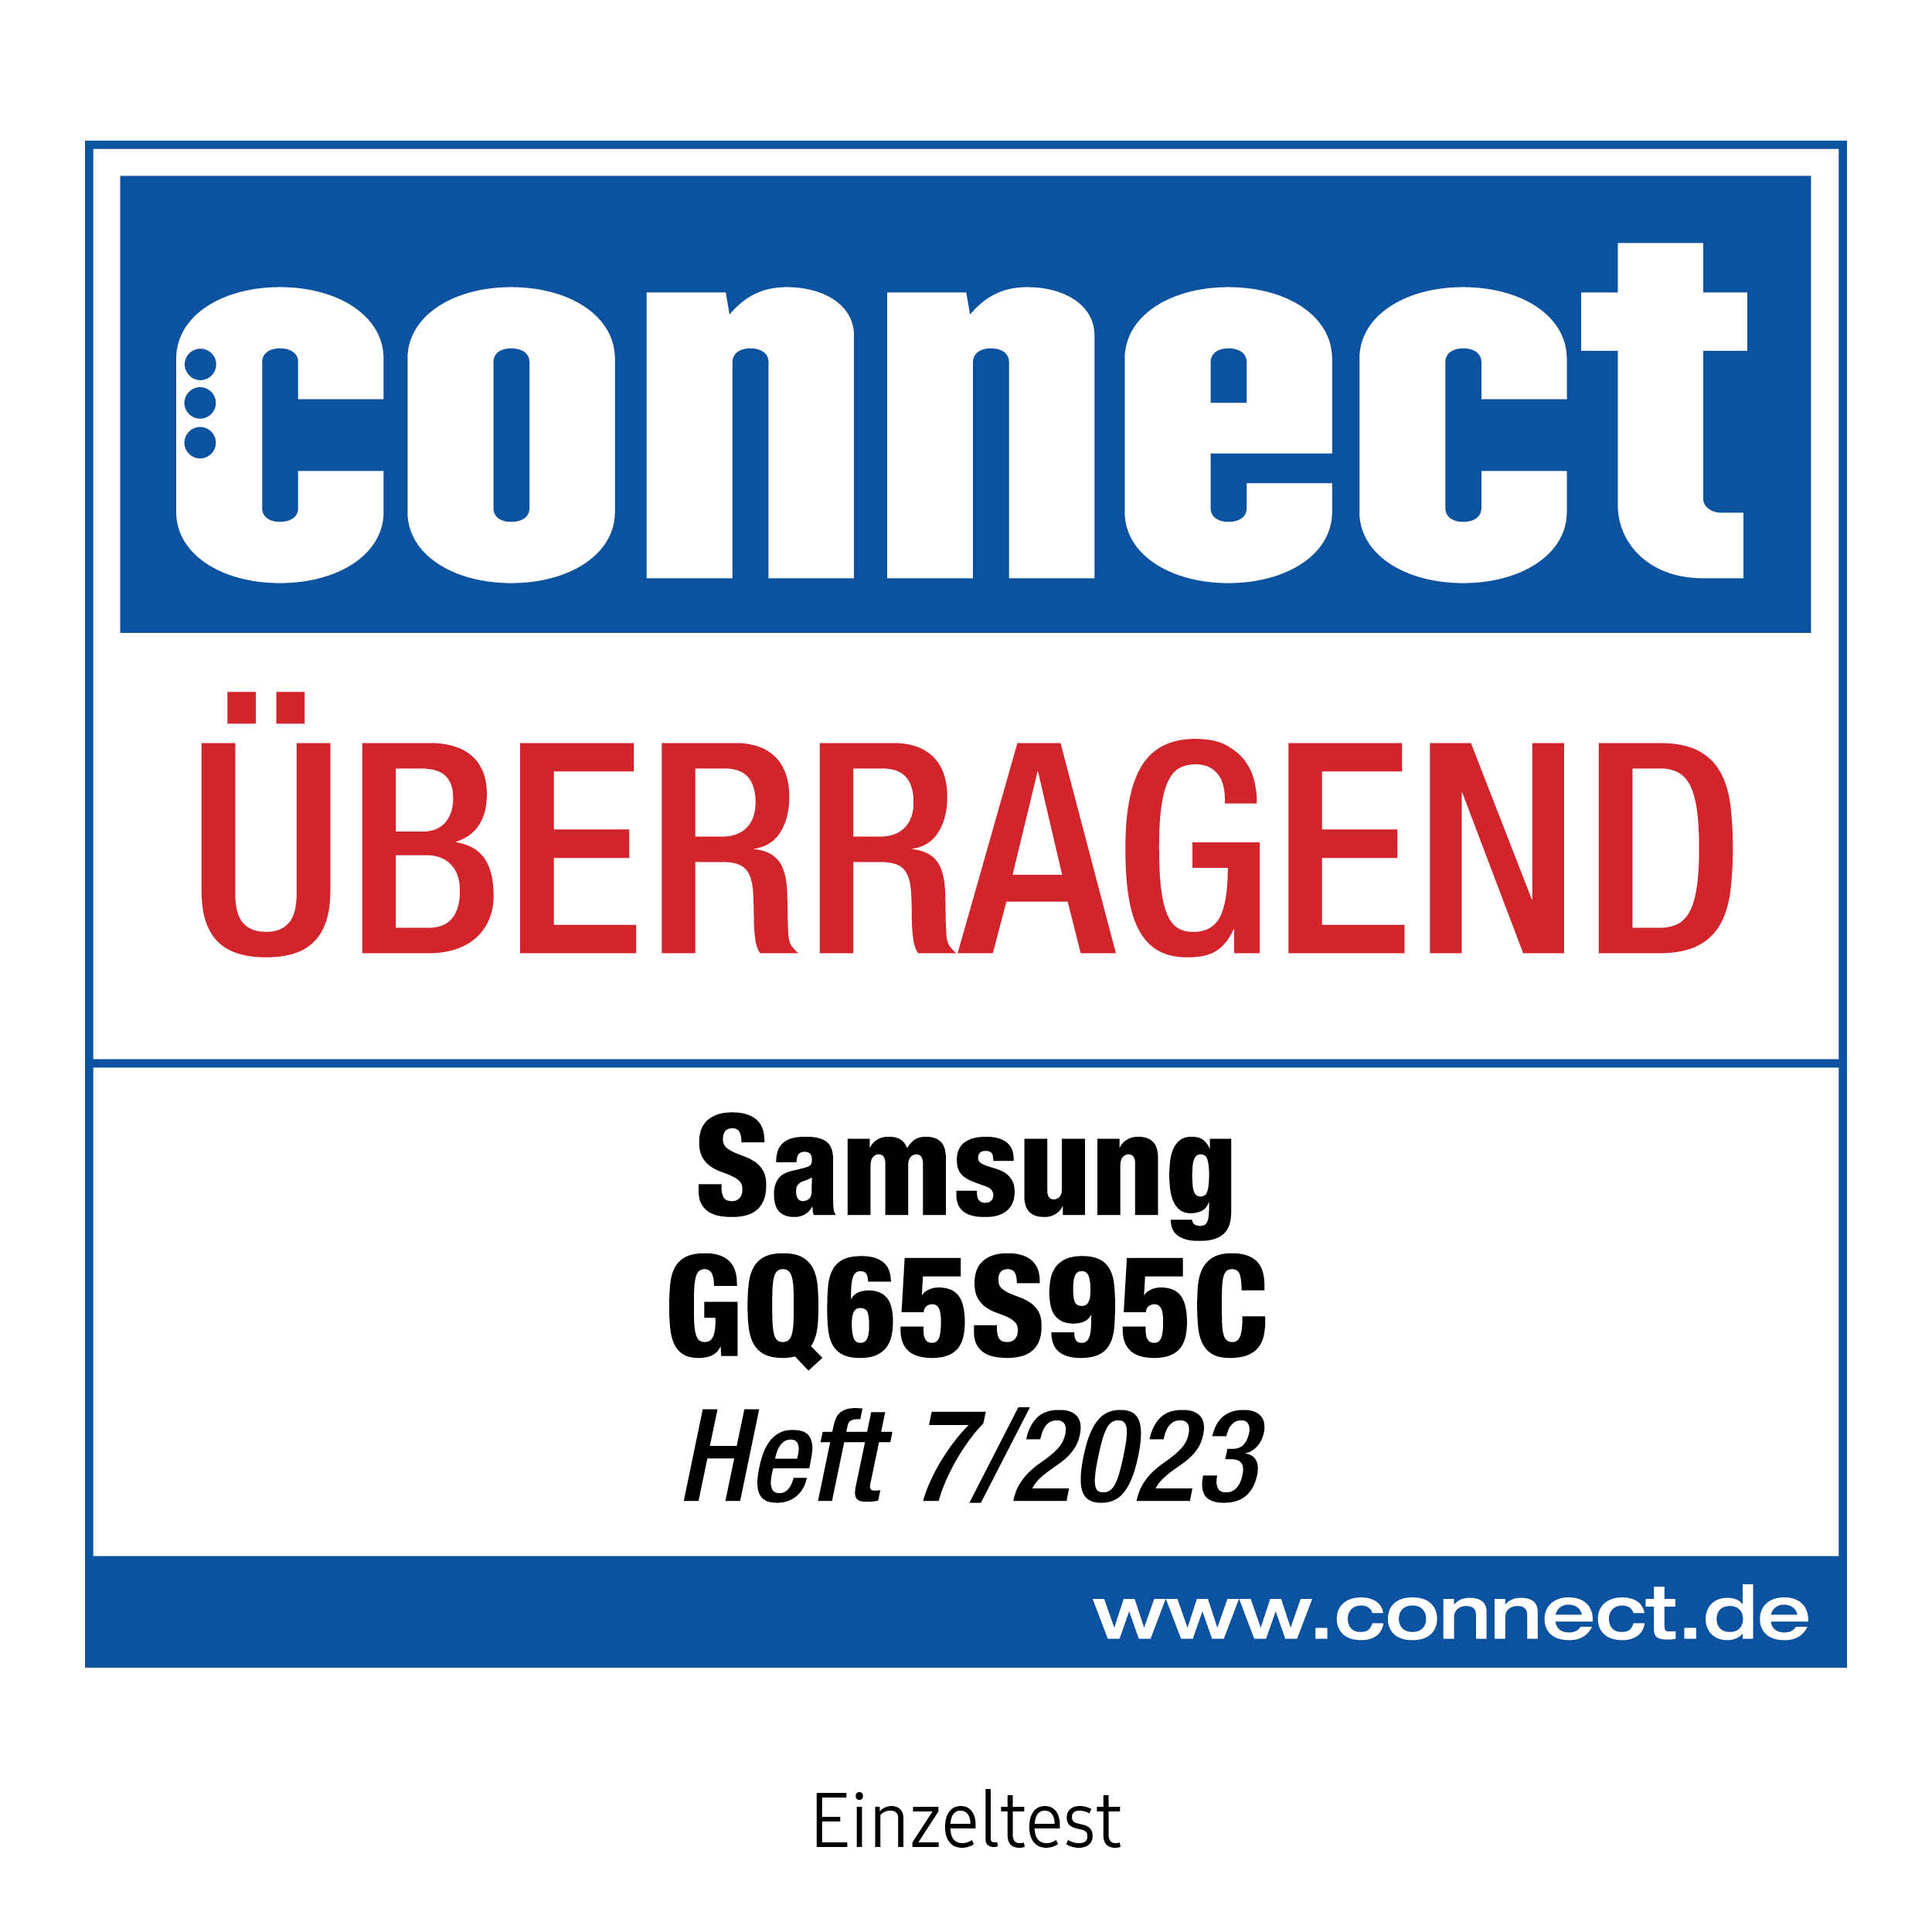 118398_connect_ueberragend_Samsung_GQ65S95C_7_2023_mitAngaben